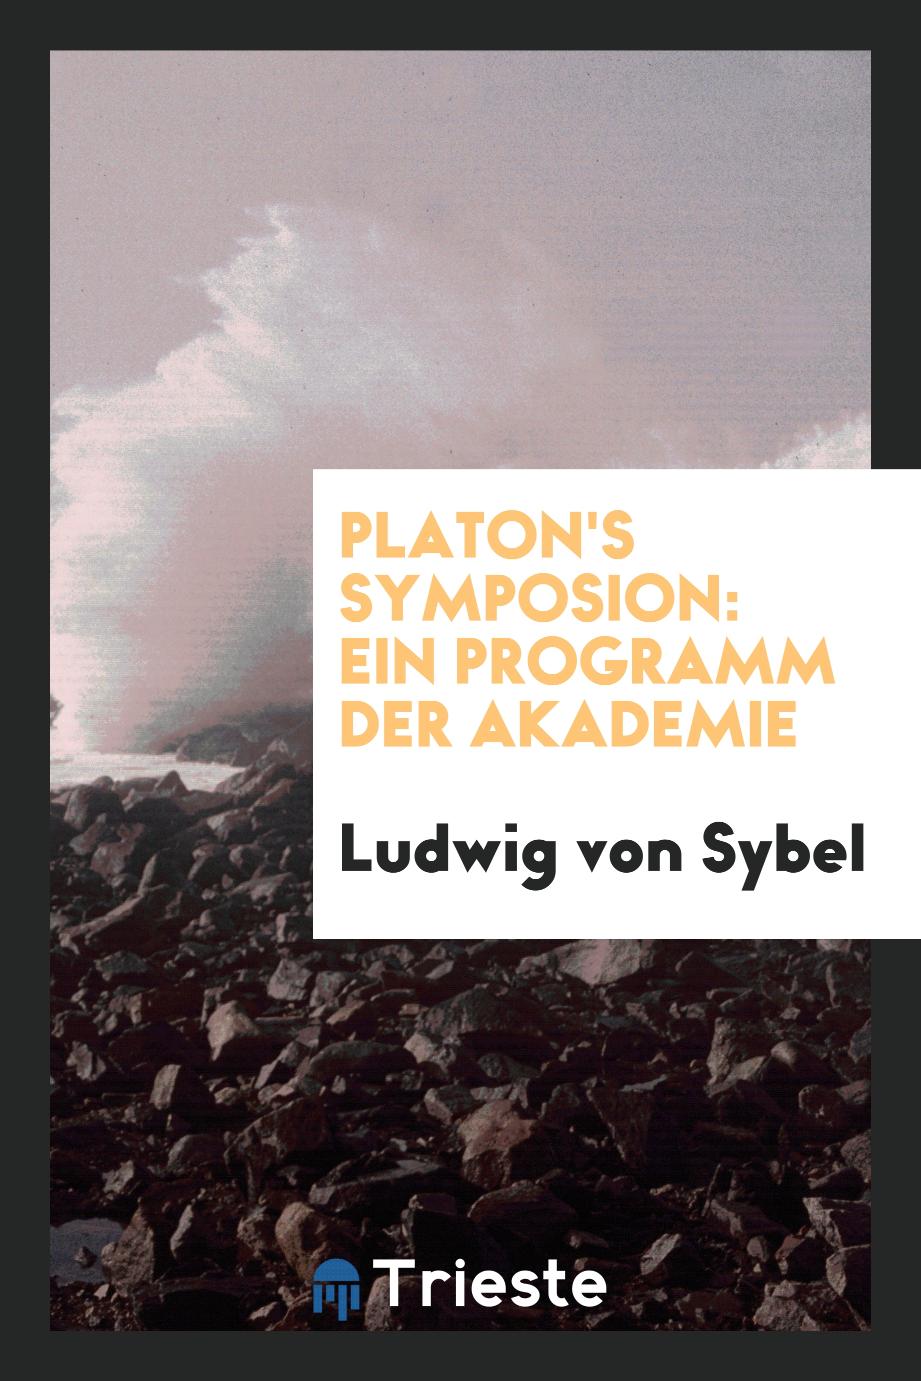 Platon's Symposion: Ein Programm der Akademie